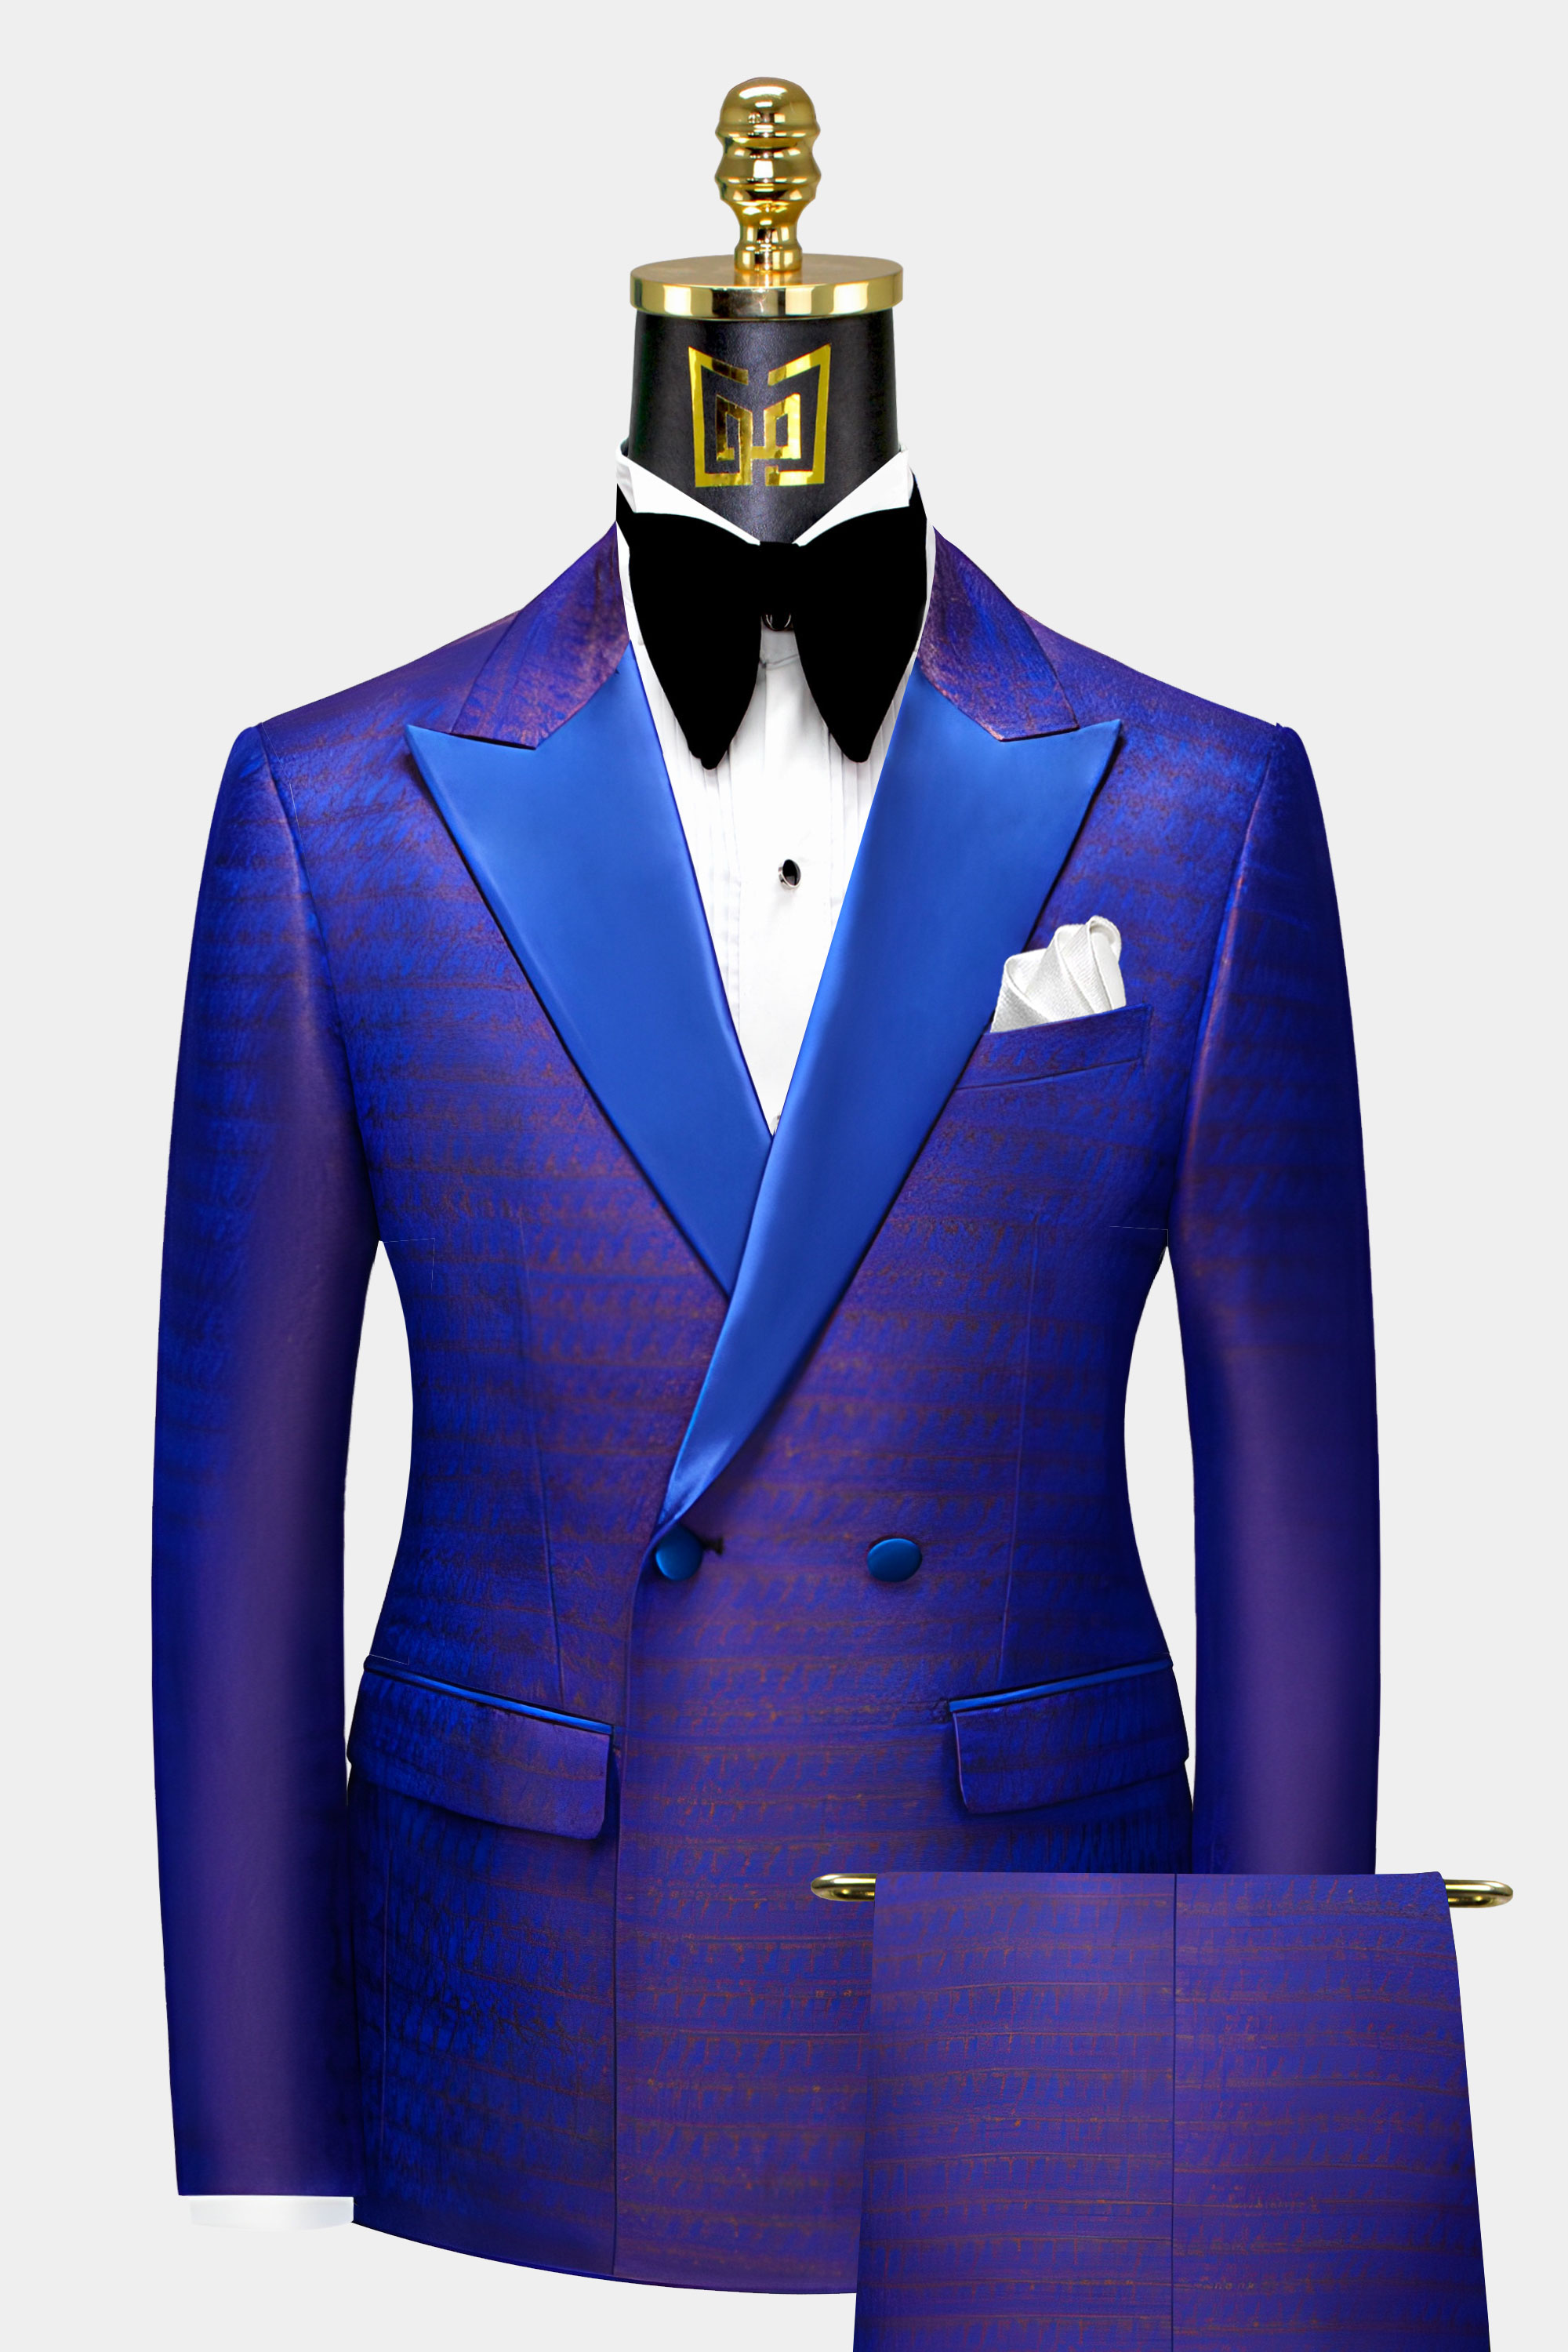 Sapphire-Blue-Tuxedo-Groom-Wedding-Prom-Suit-For-Men-from-Gentlemansguru.com